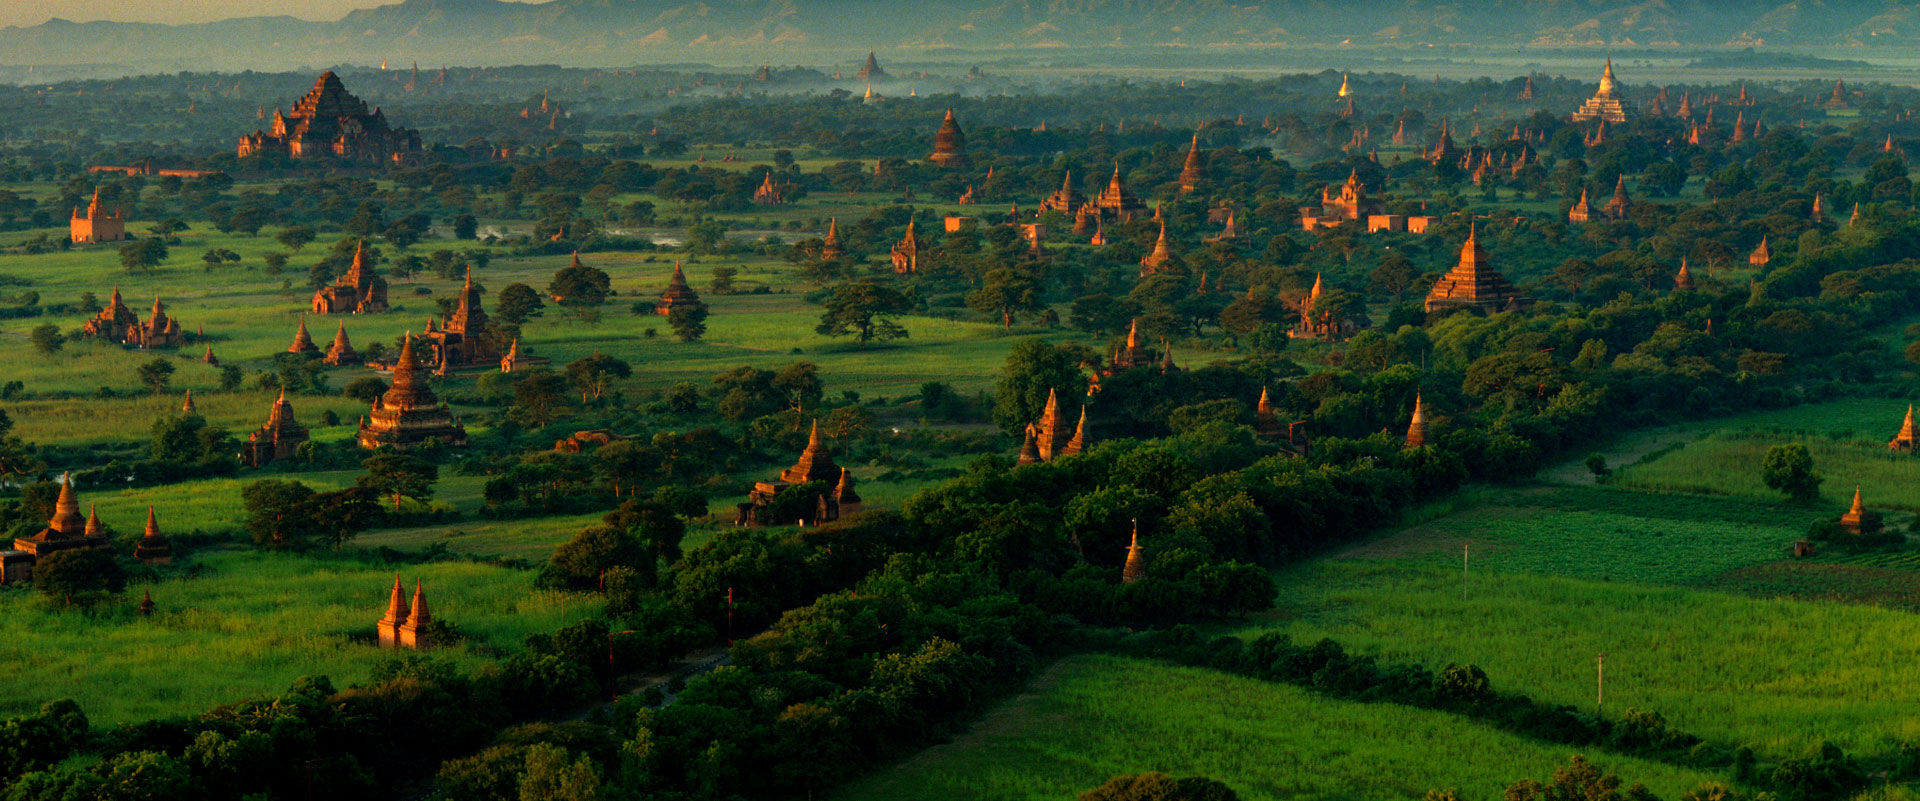 Bagan (Burma/Myanmar)